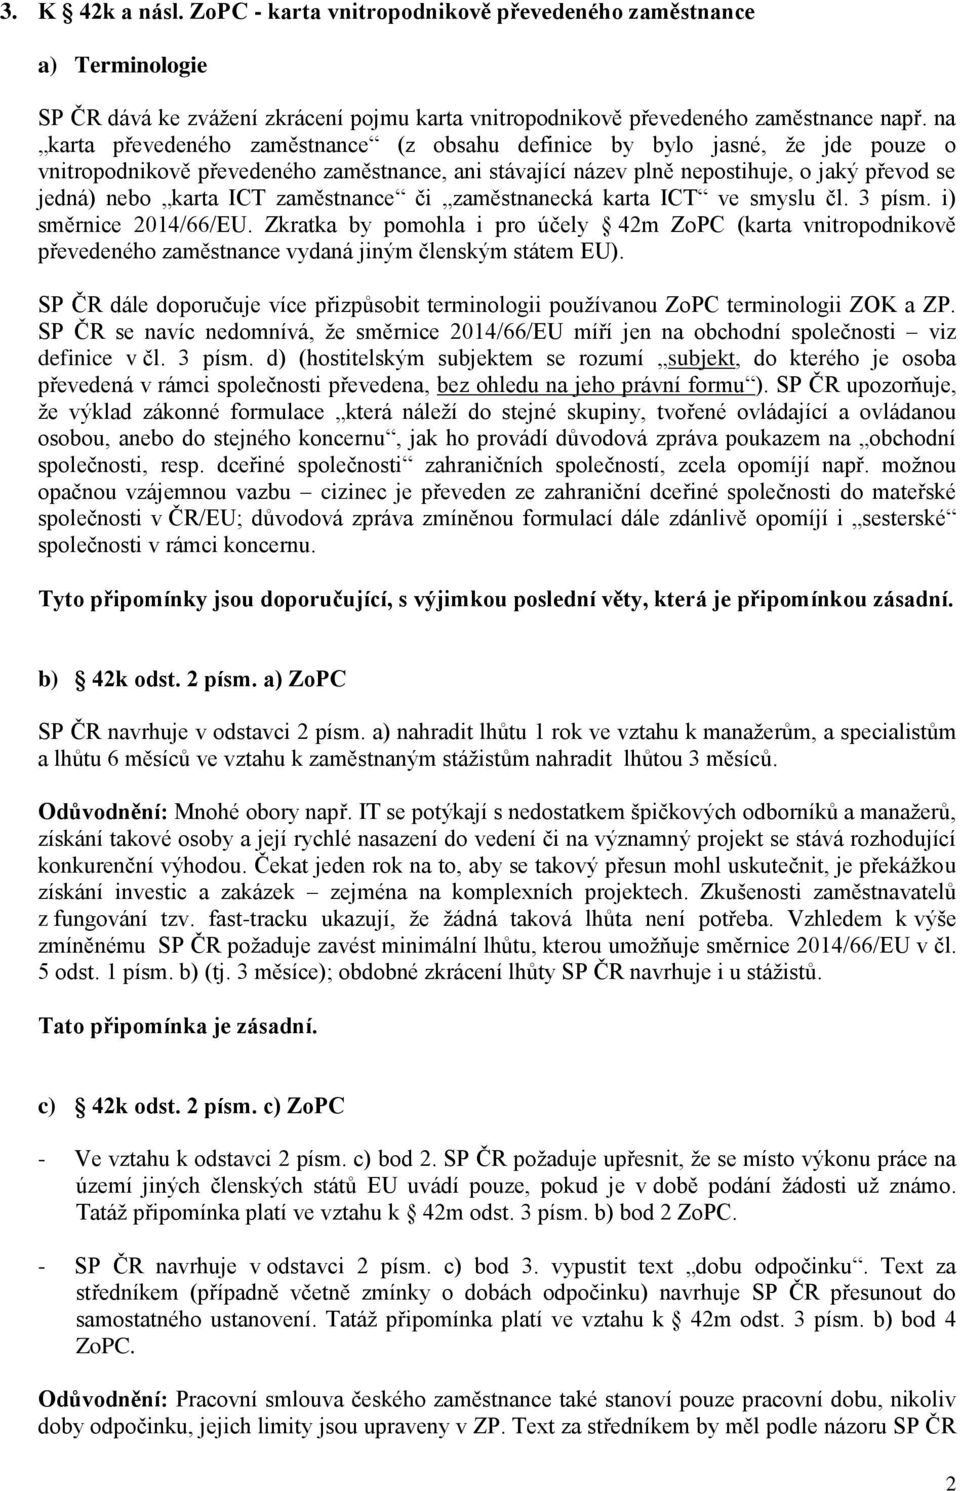 zaměstnance či zaměstnanecká karta ICT ve smyslu čl. 3 písm. i) směrnice 2014/66/EU.